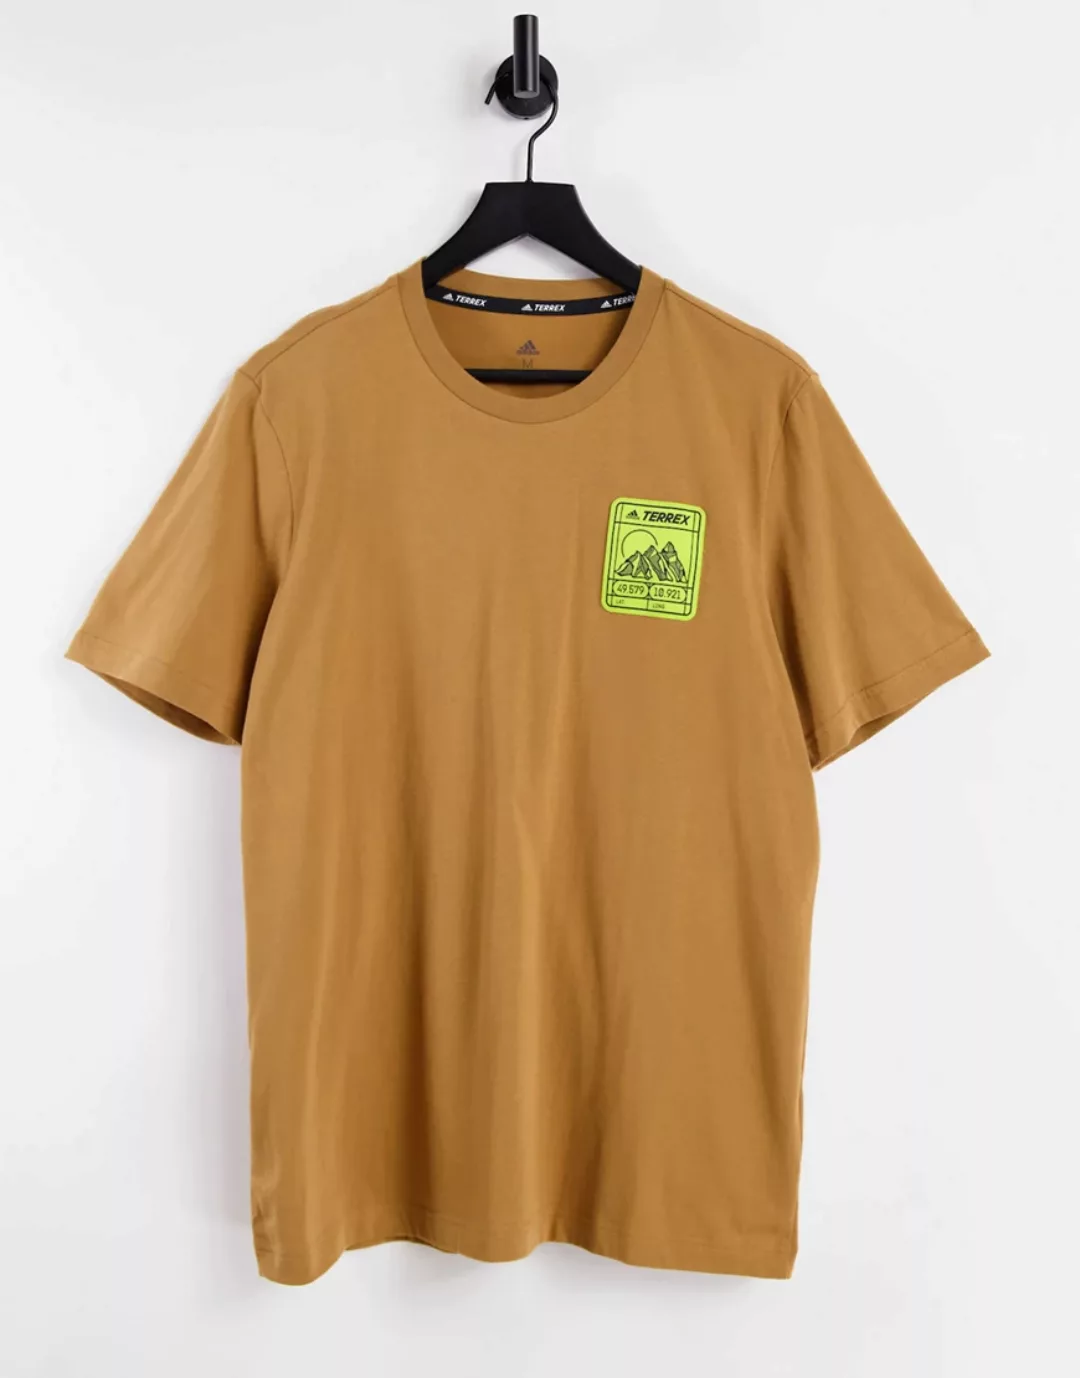 Adidas – Terrex – T-Shirt in Braun mit Berg-Logo günstig online kaufen